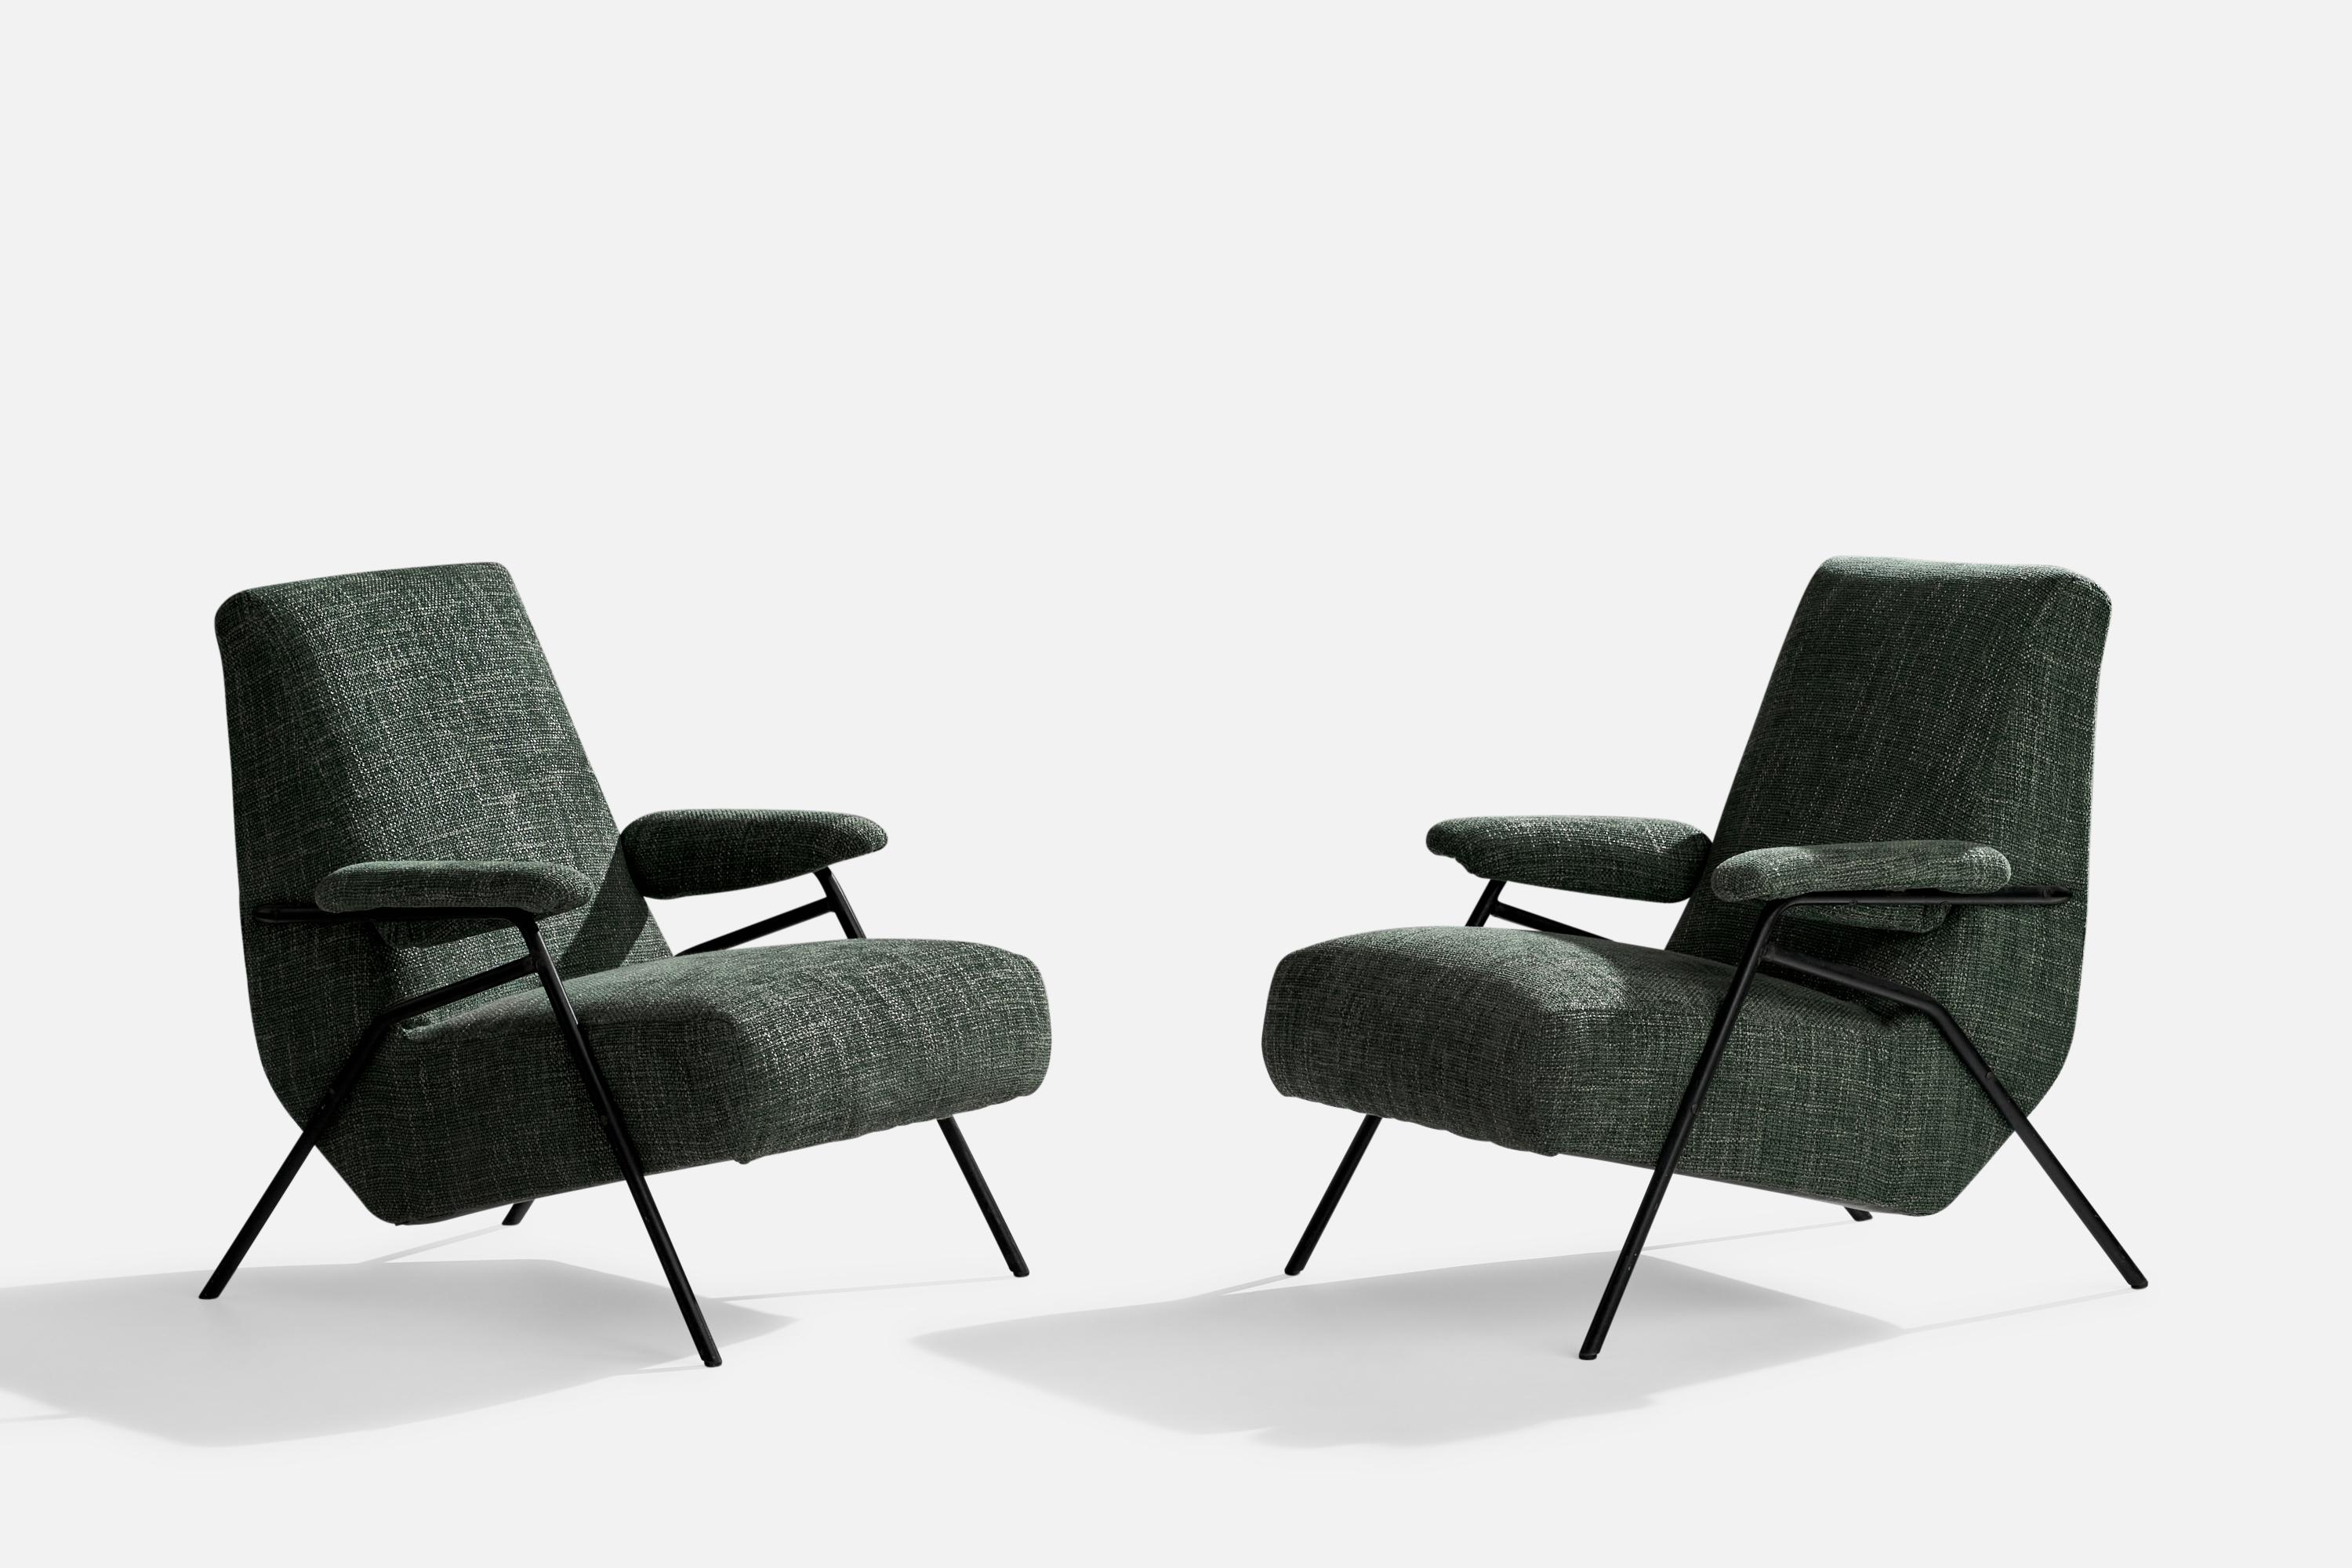 Paire de chaises de salon en fer peint en noir et en tissu vert, conçues et produites en Italie, années 1950.

Hauteur d'assise 14.97